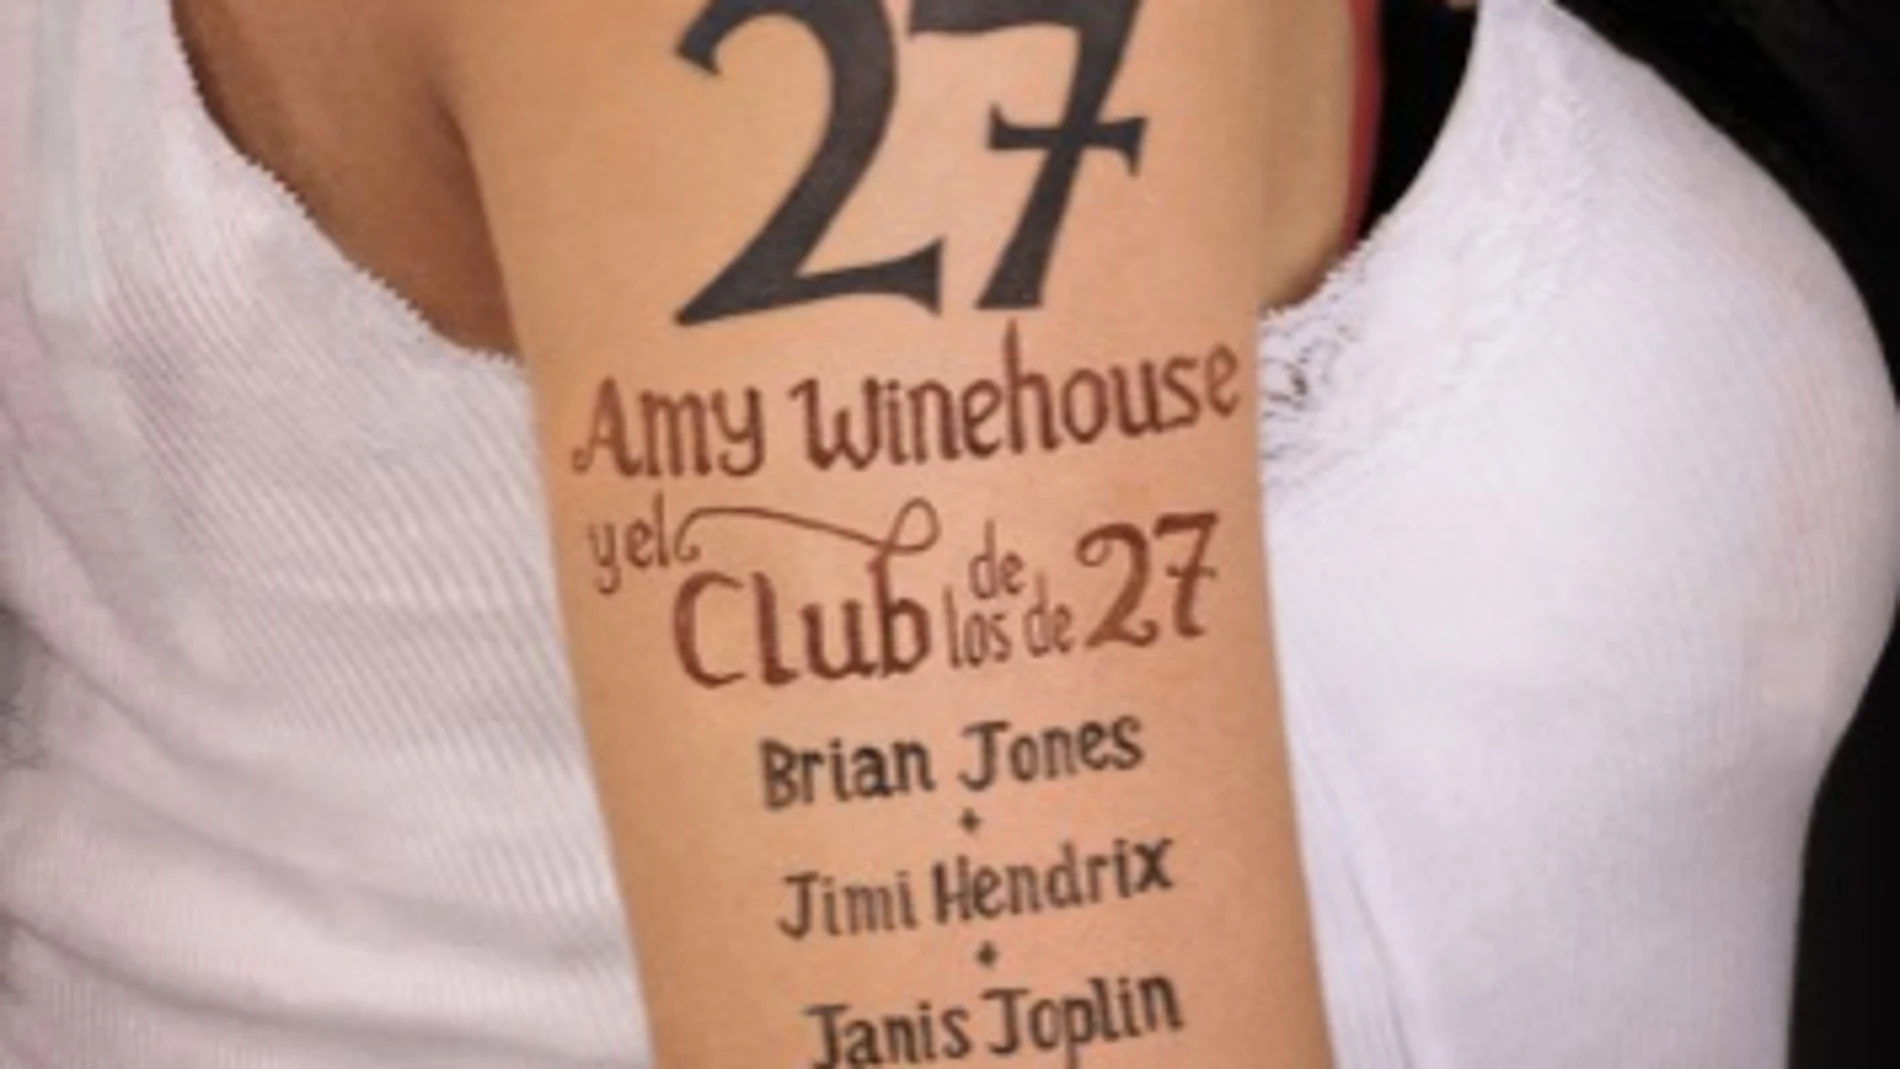 Portada del libro de Howard Sounes "Amy Winehouse y el Club de los 27"